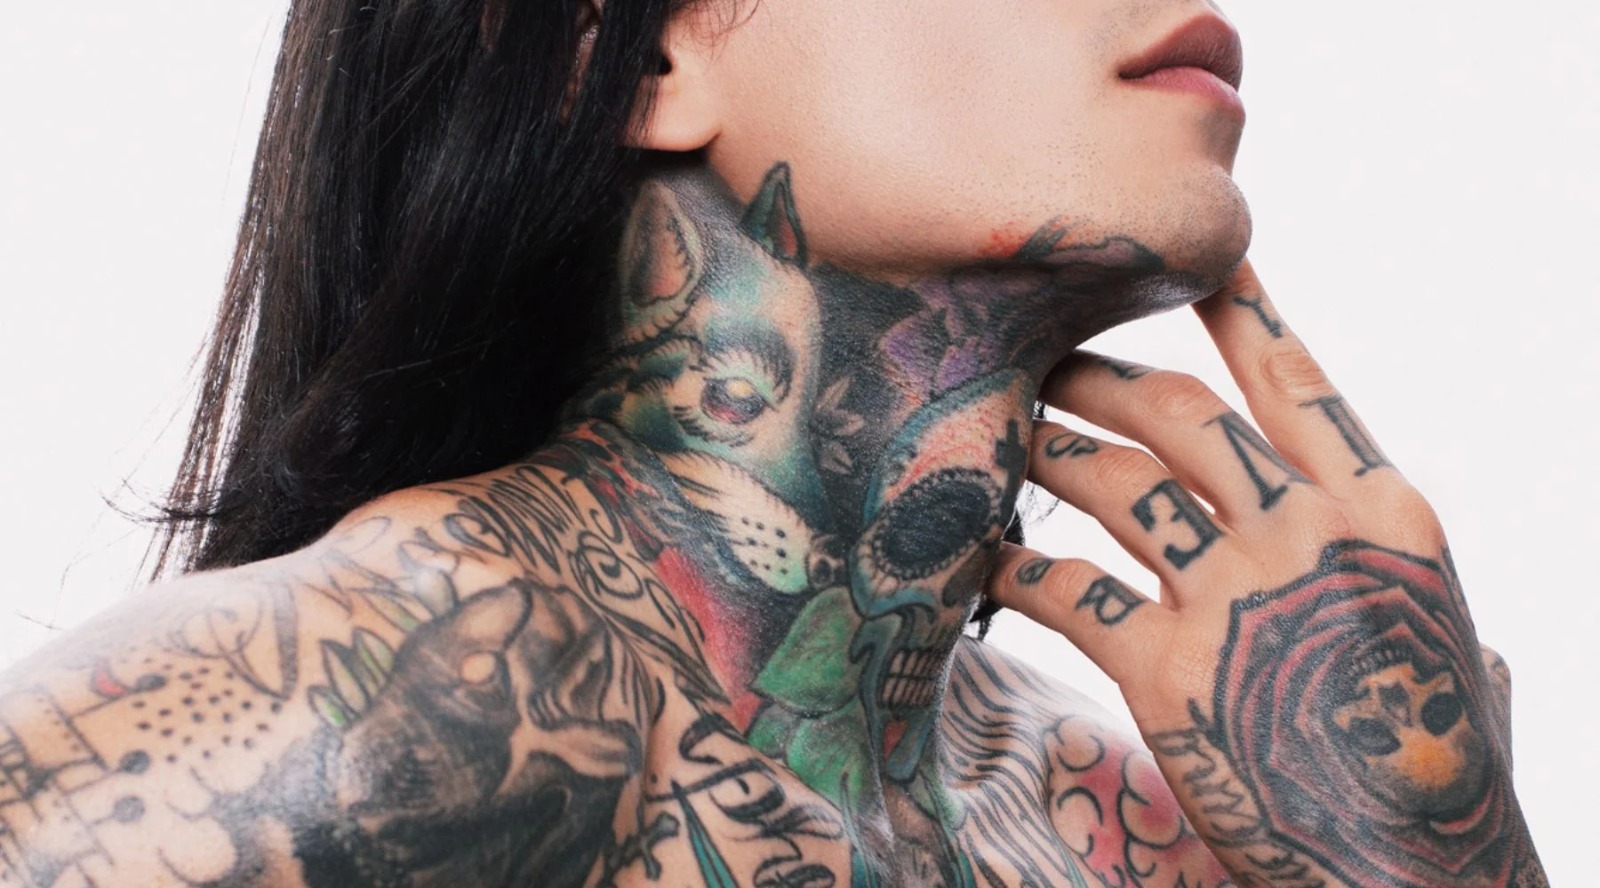 RESULTADO: Maioria é indiferente sobre tatuagens, segundo enquete